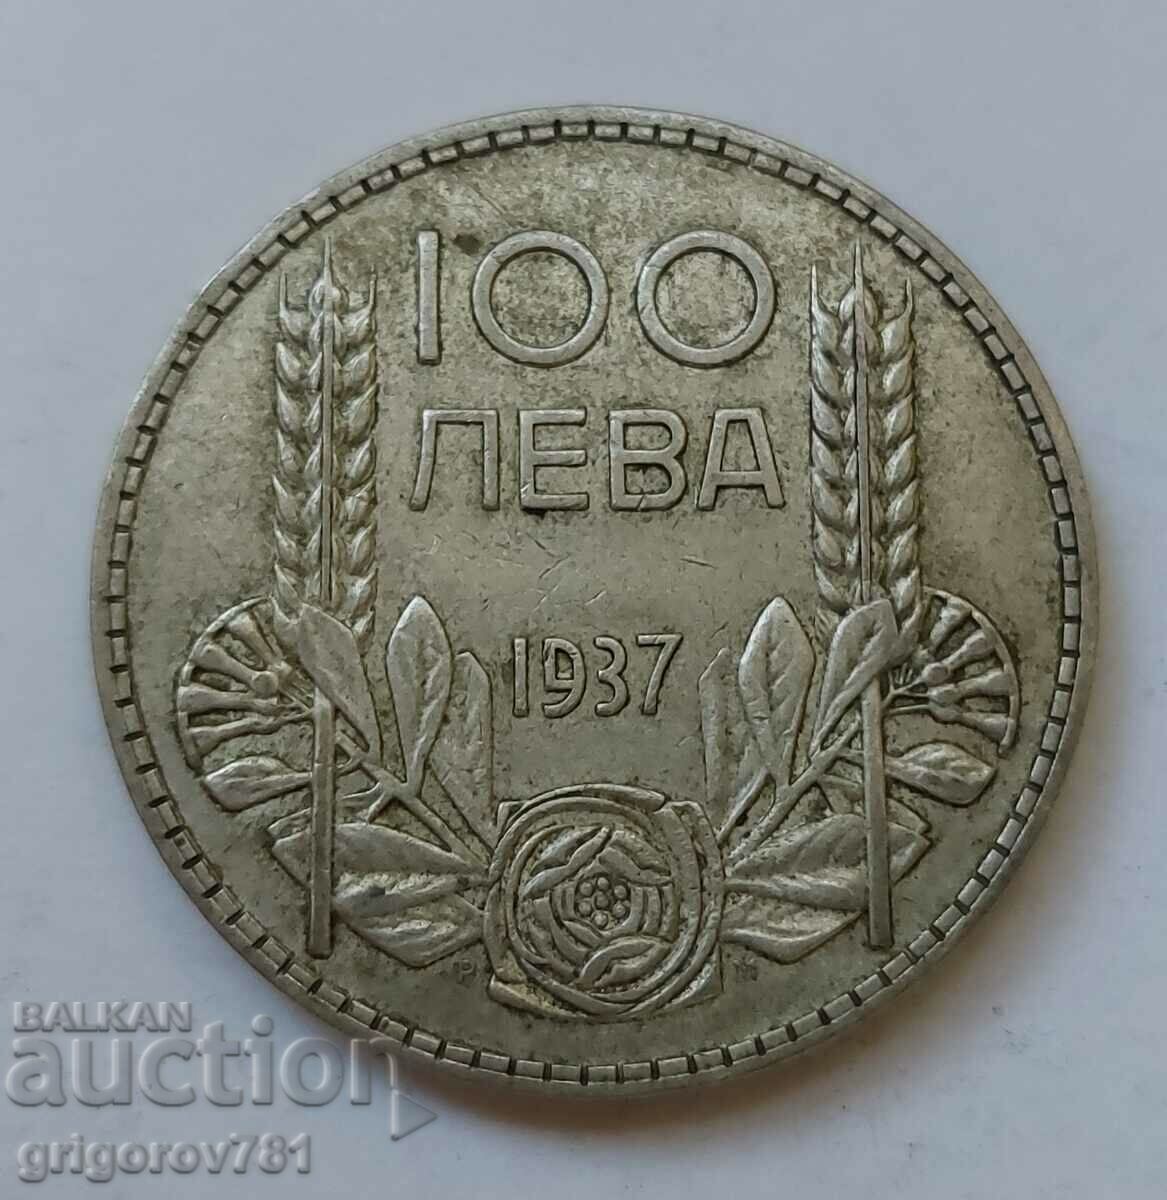 Ασήμι 100 λέβα Βουλγαρία 1937 - ασημένιο νόμισμα #133